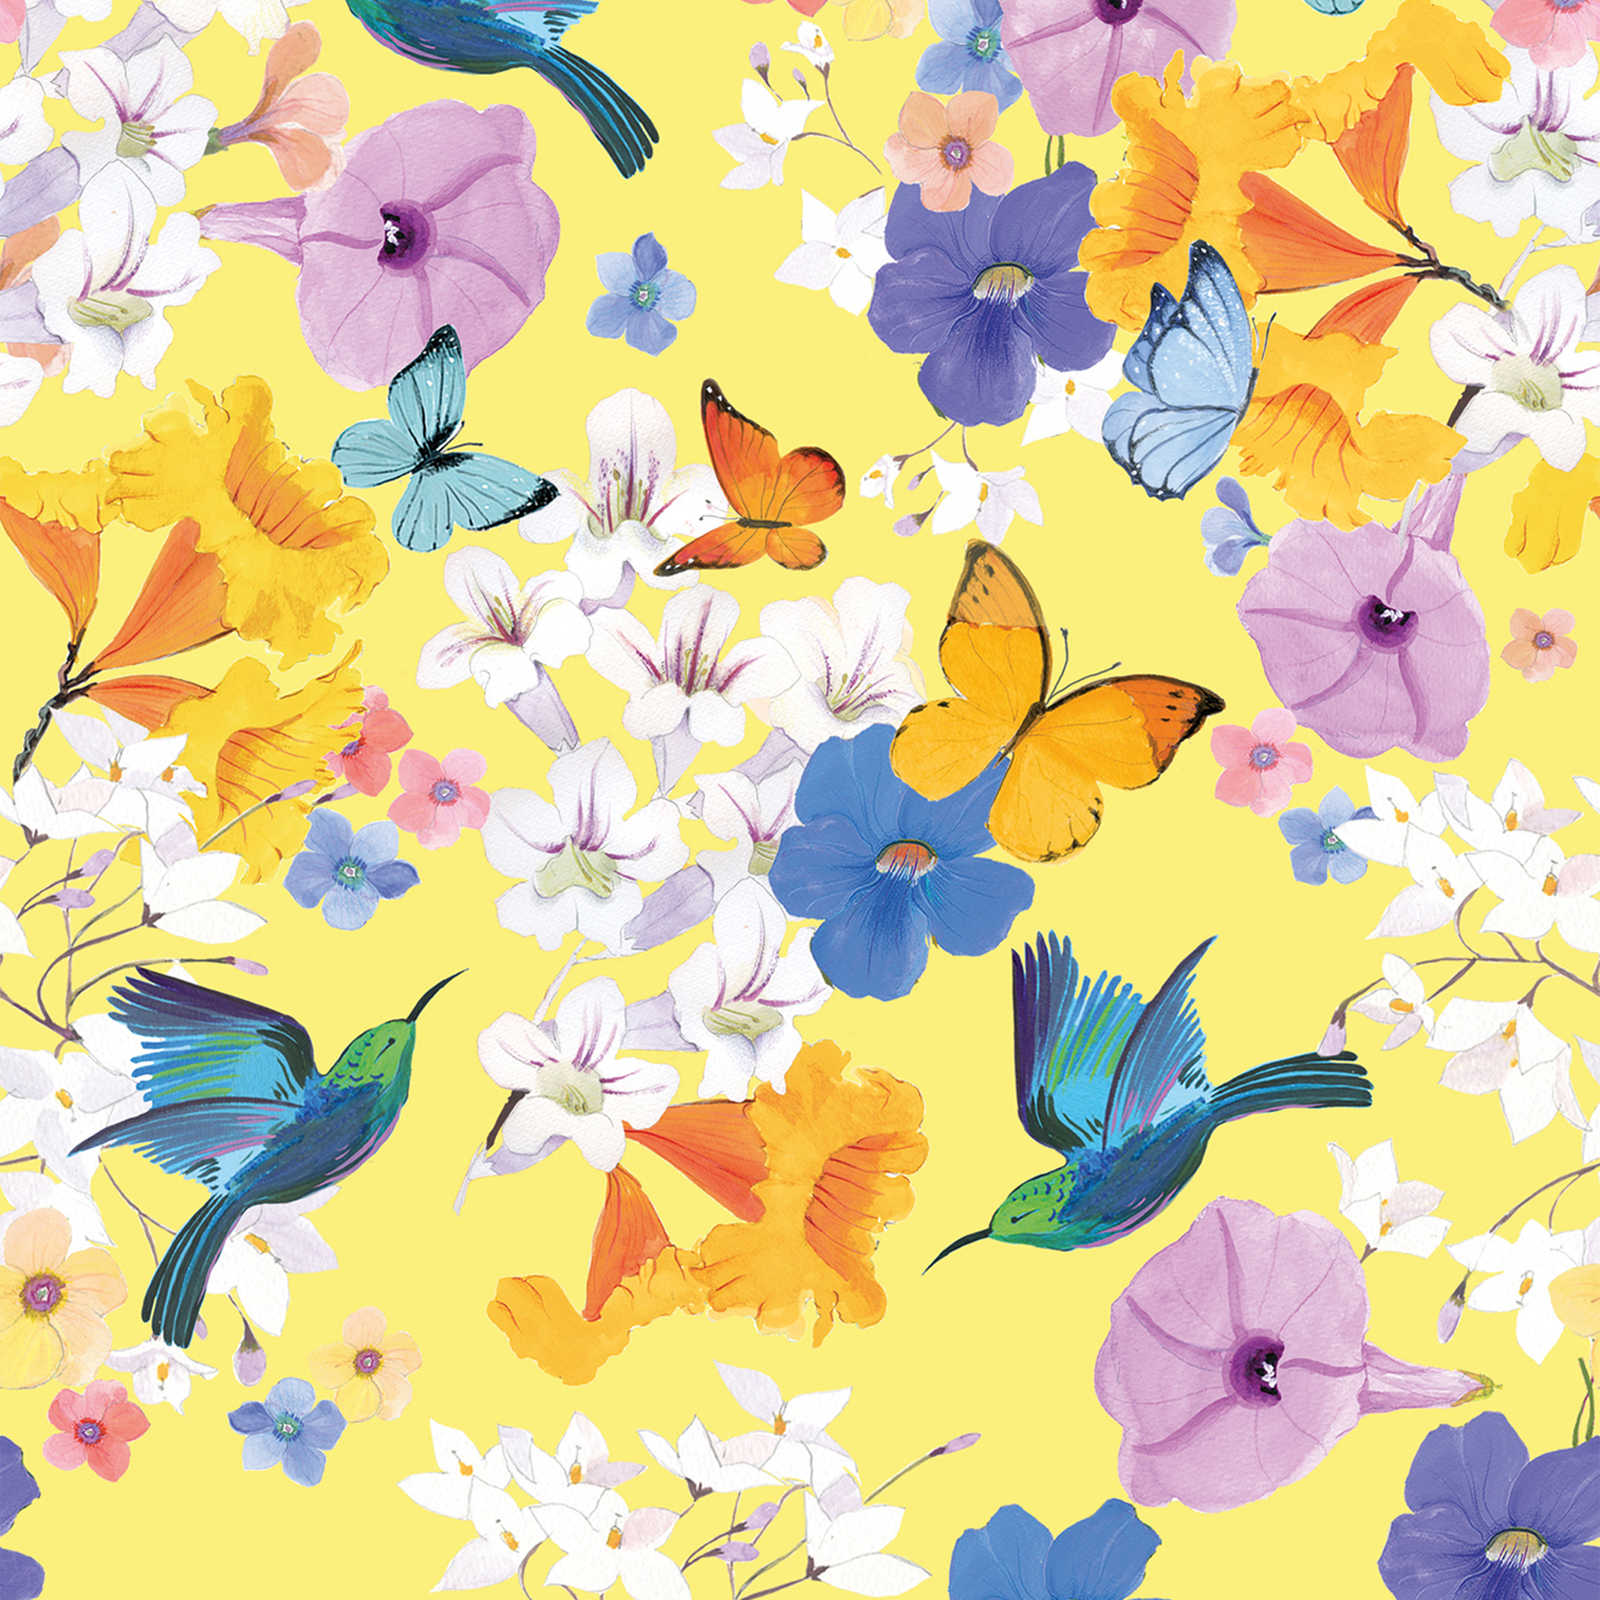 Bloemrijkbehang met vlinders en vogels - kleurrijk, geel, blauw
